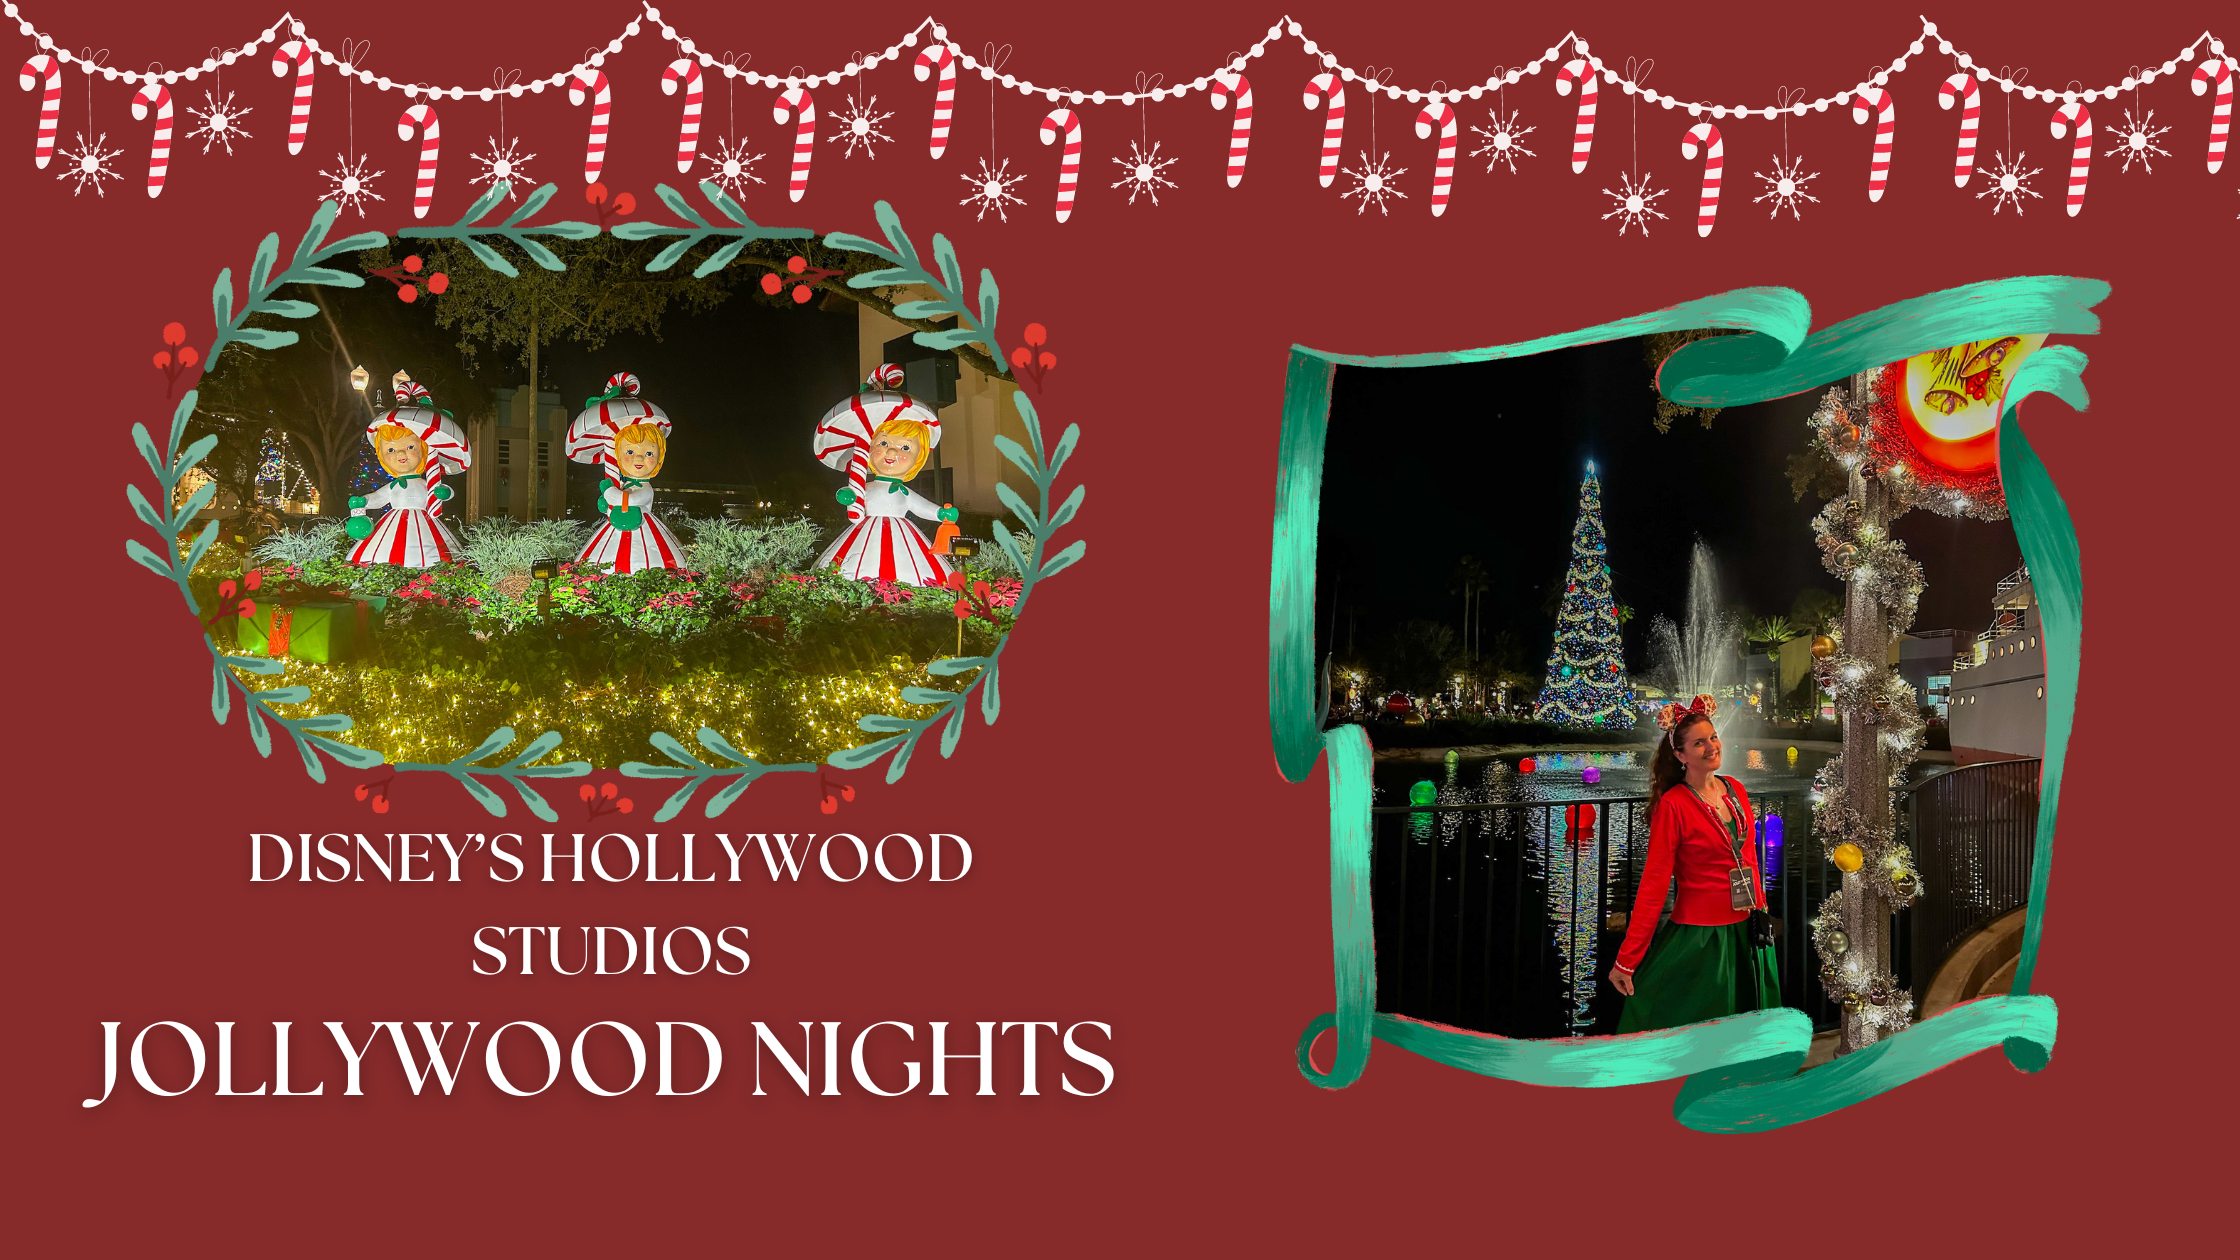 Jollywood Nights at Disney’s Hollywood Studios!